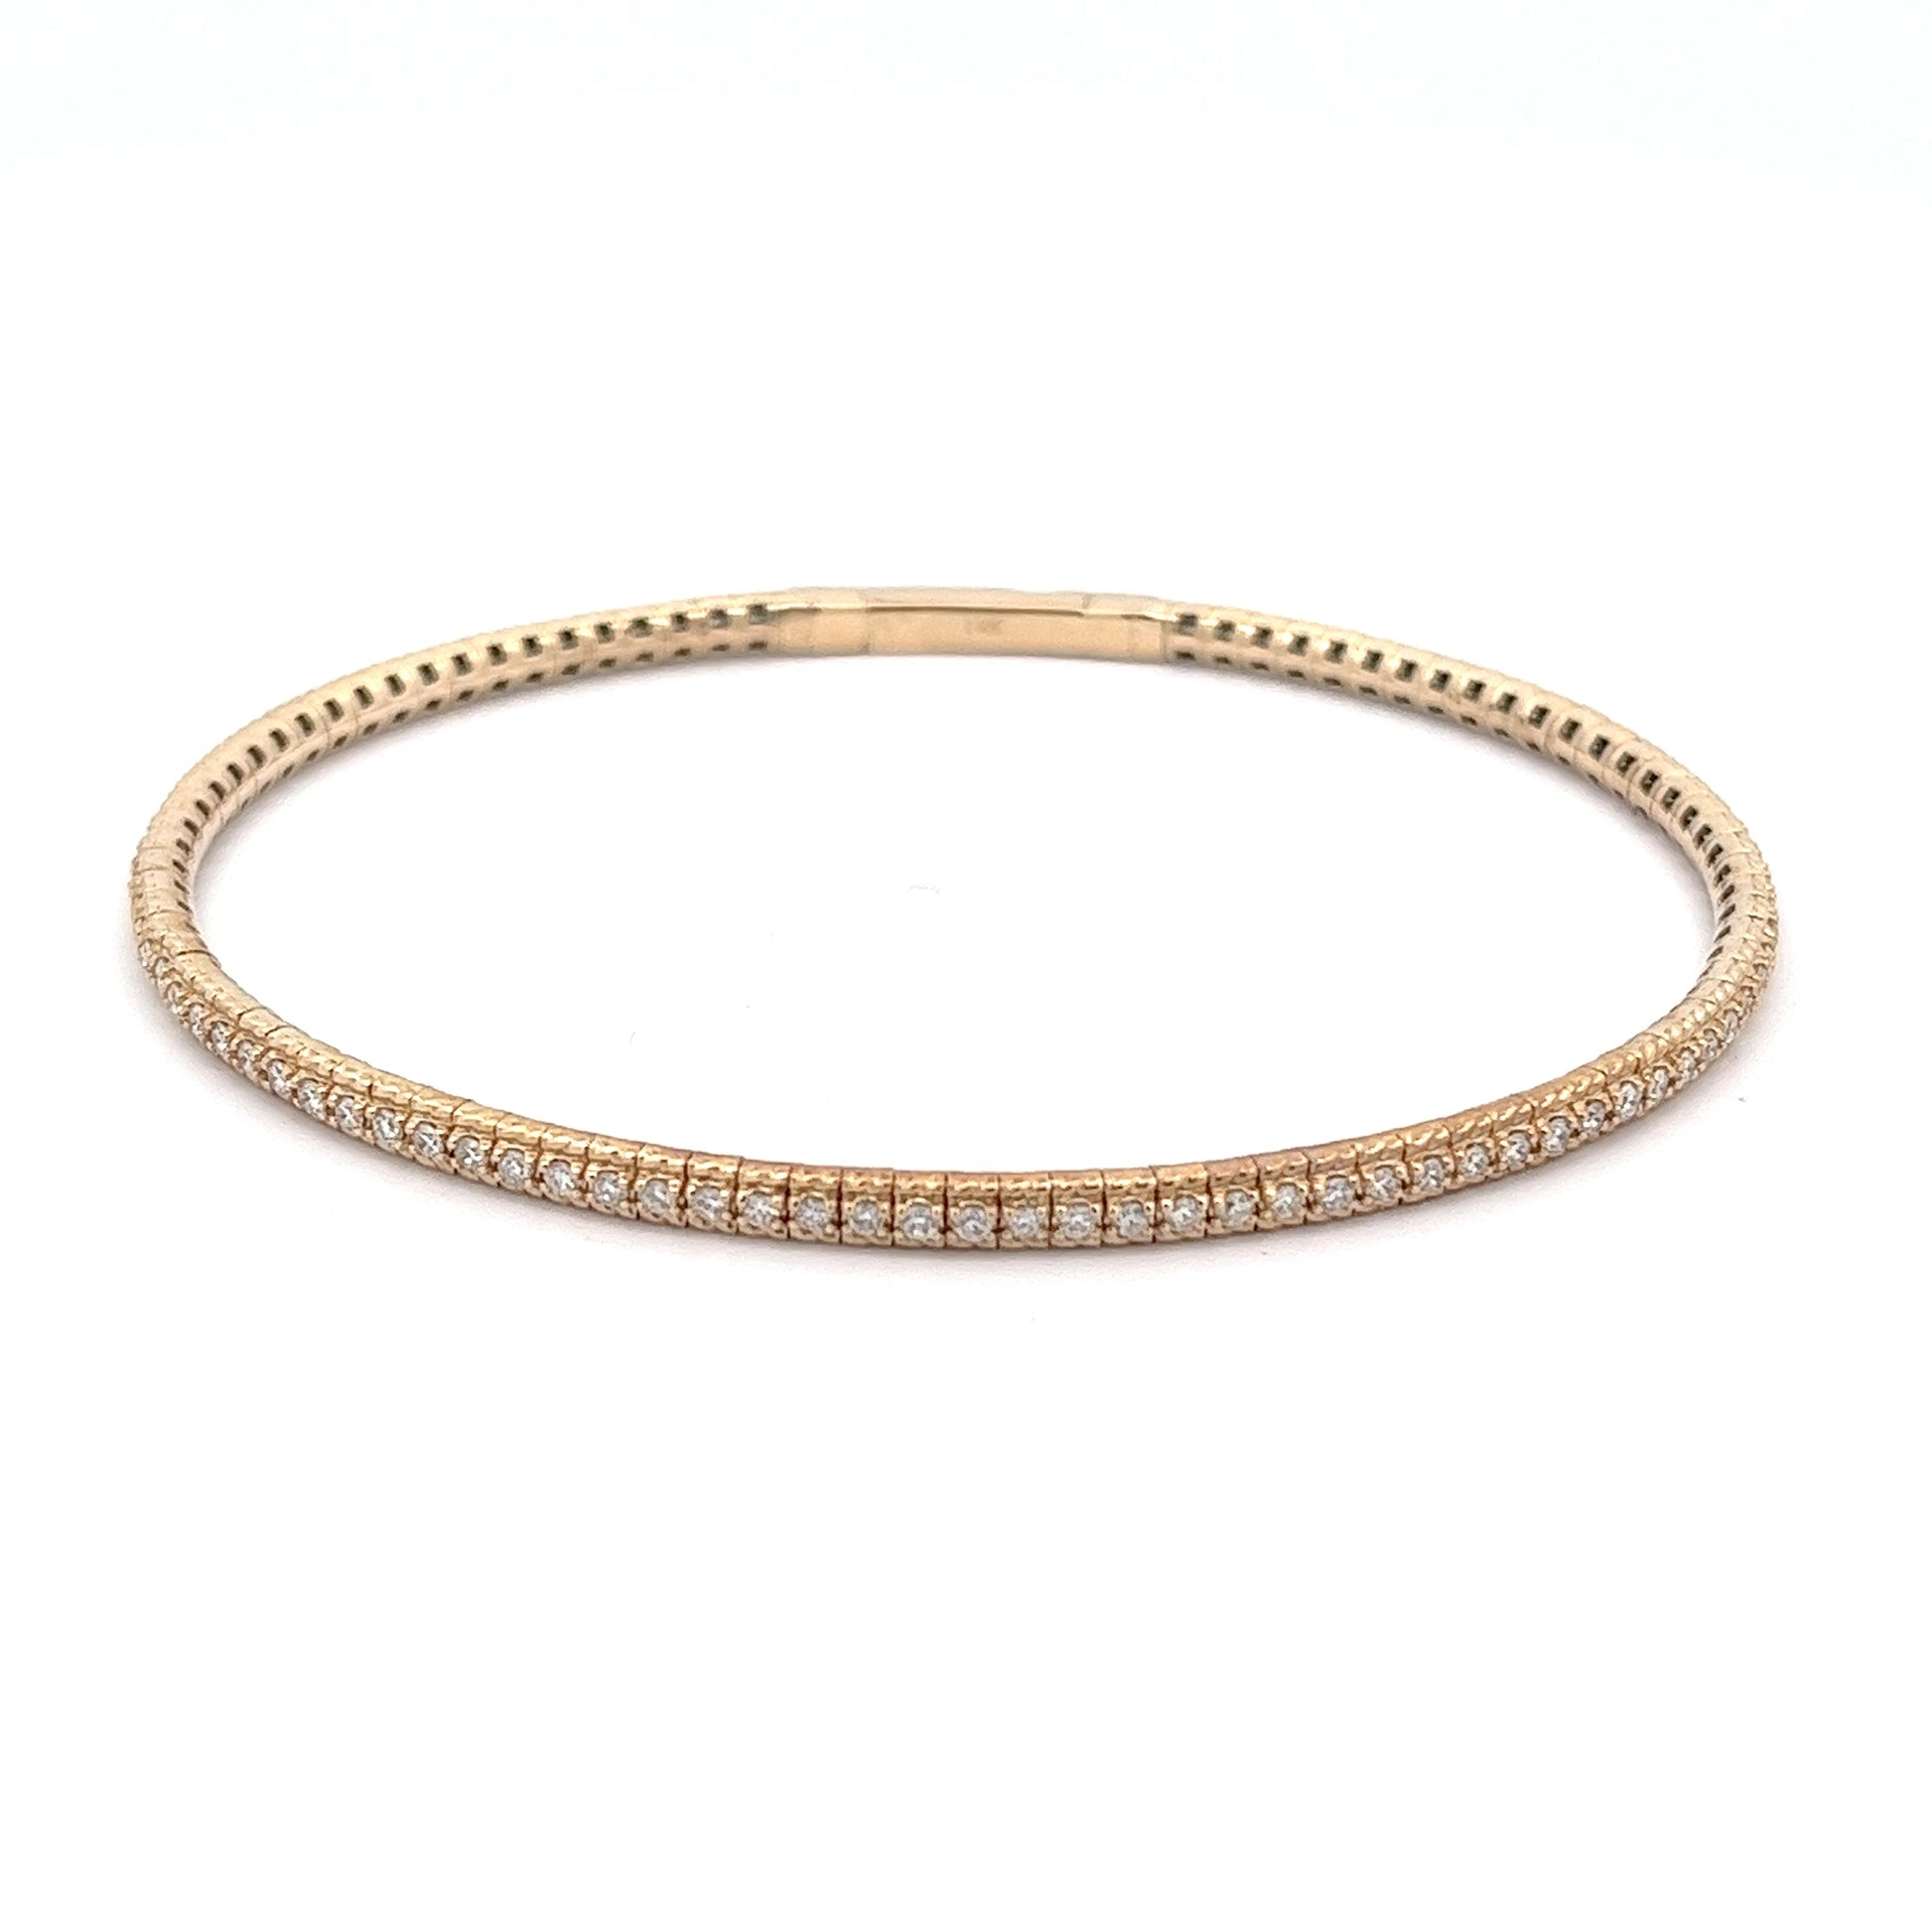 14k Yellow Gold Flexible Diamond Bangle Bracelet